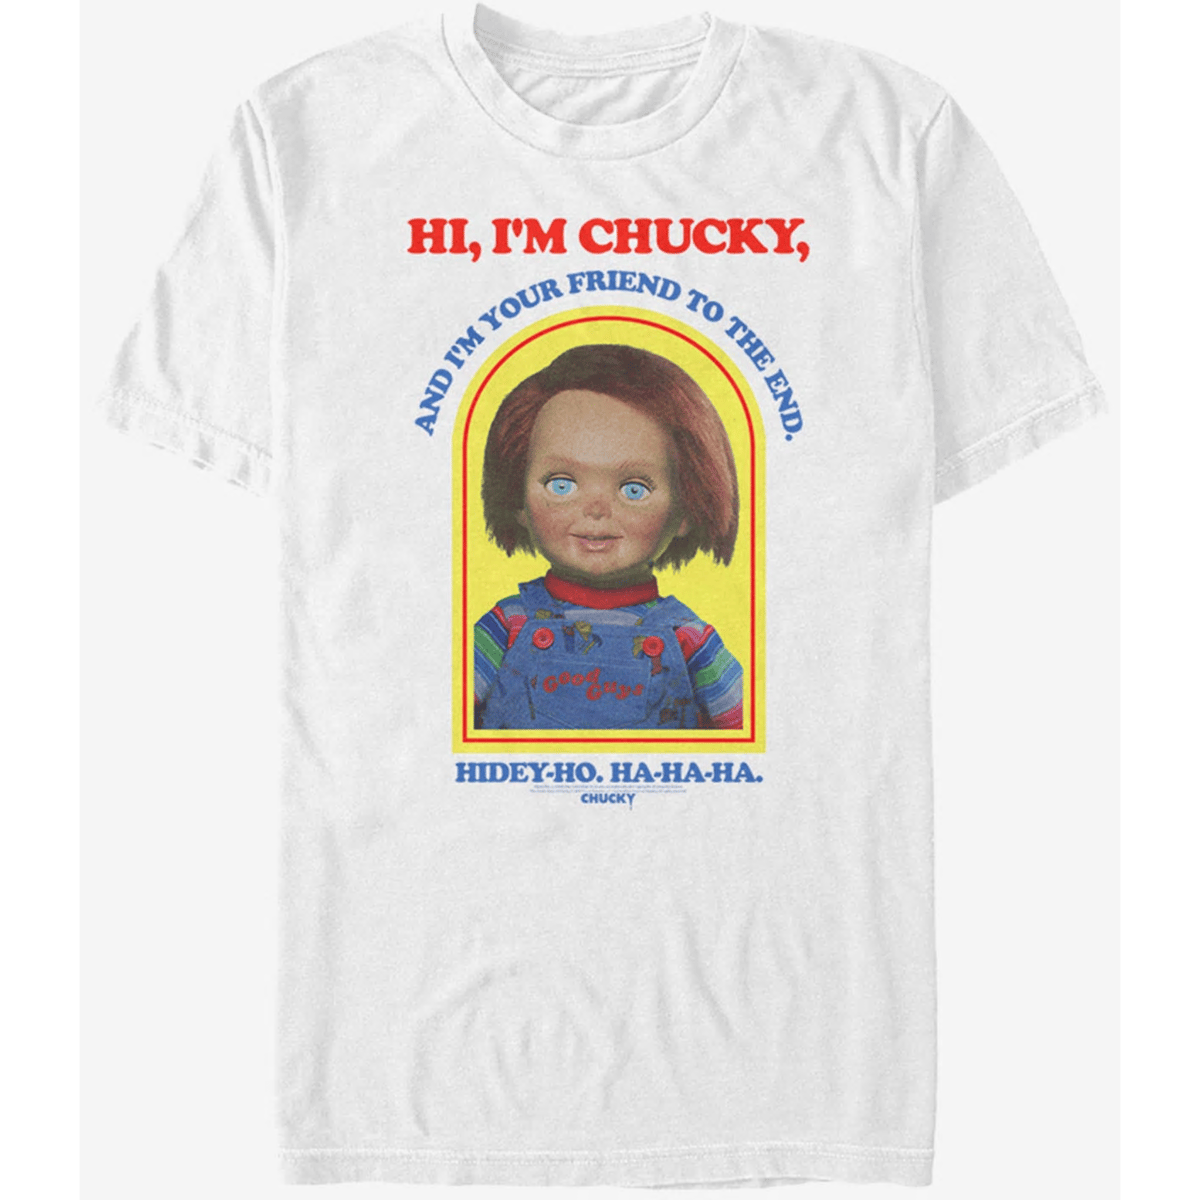 USA直輸入】Child's Play チャイルドプレイ Chucky チャッキー Hi